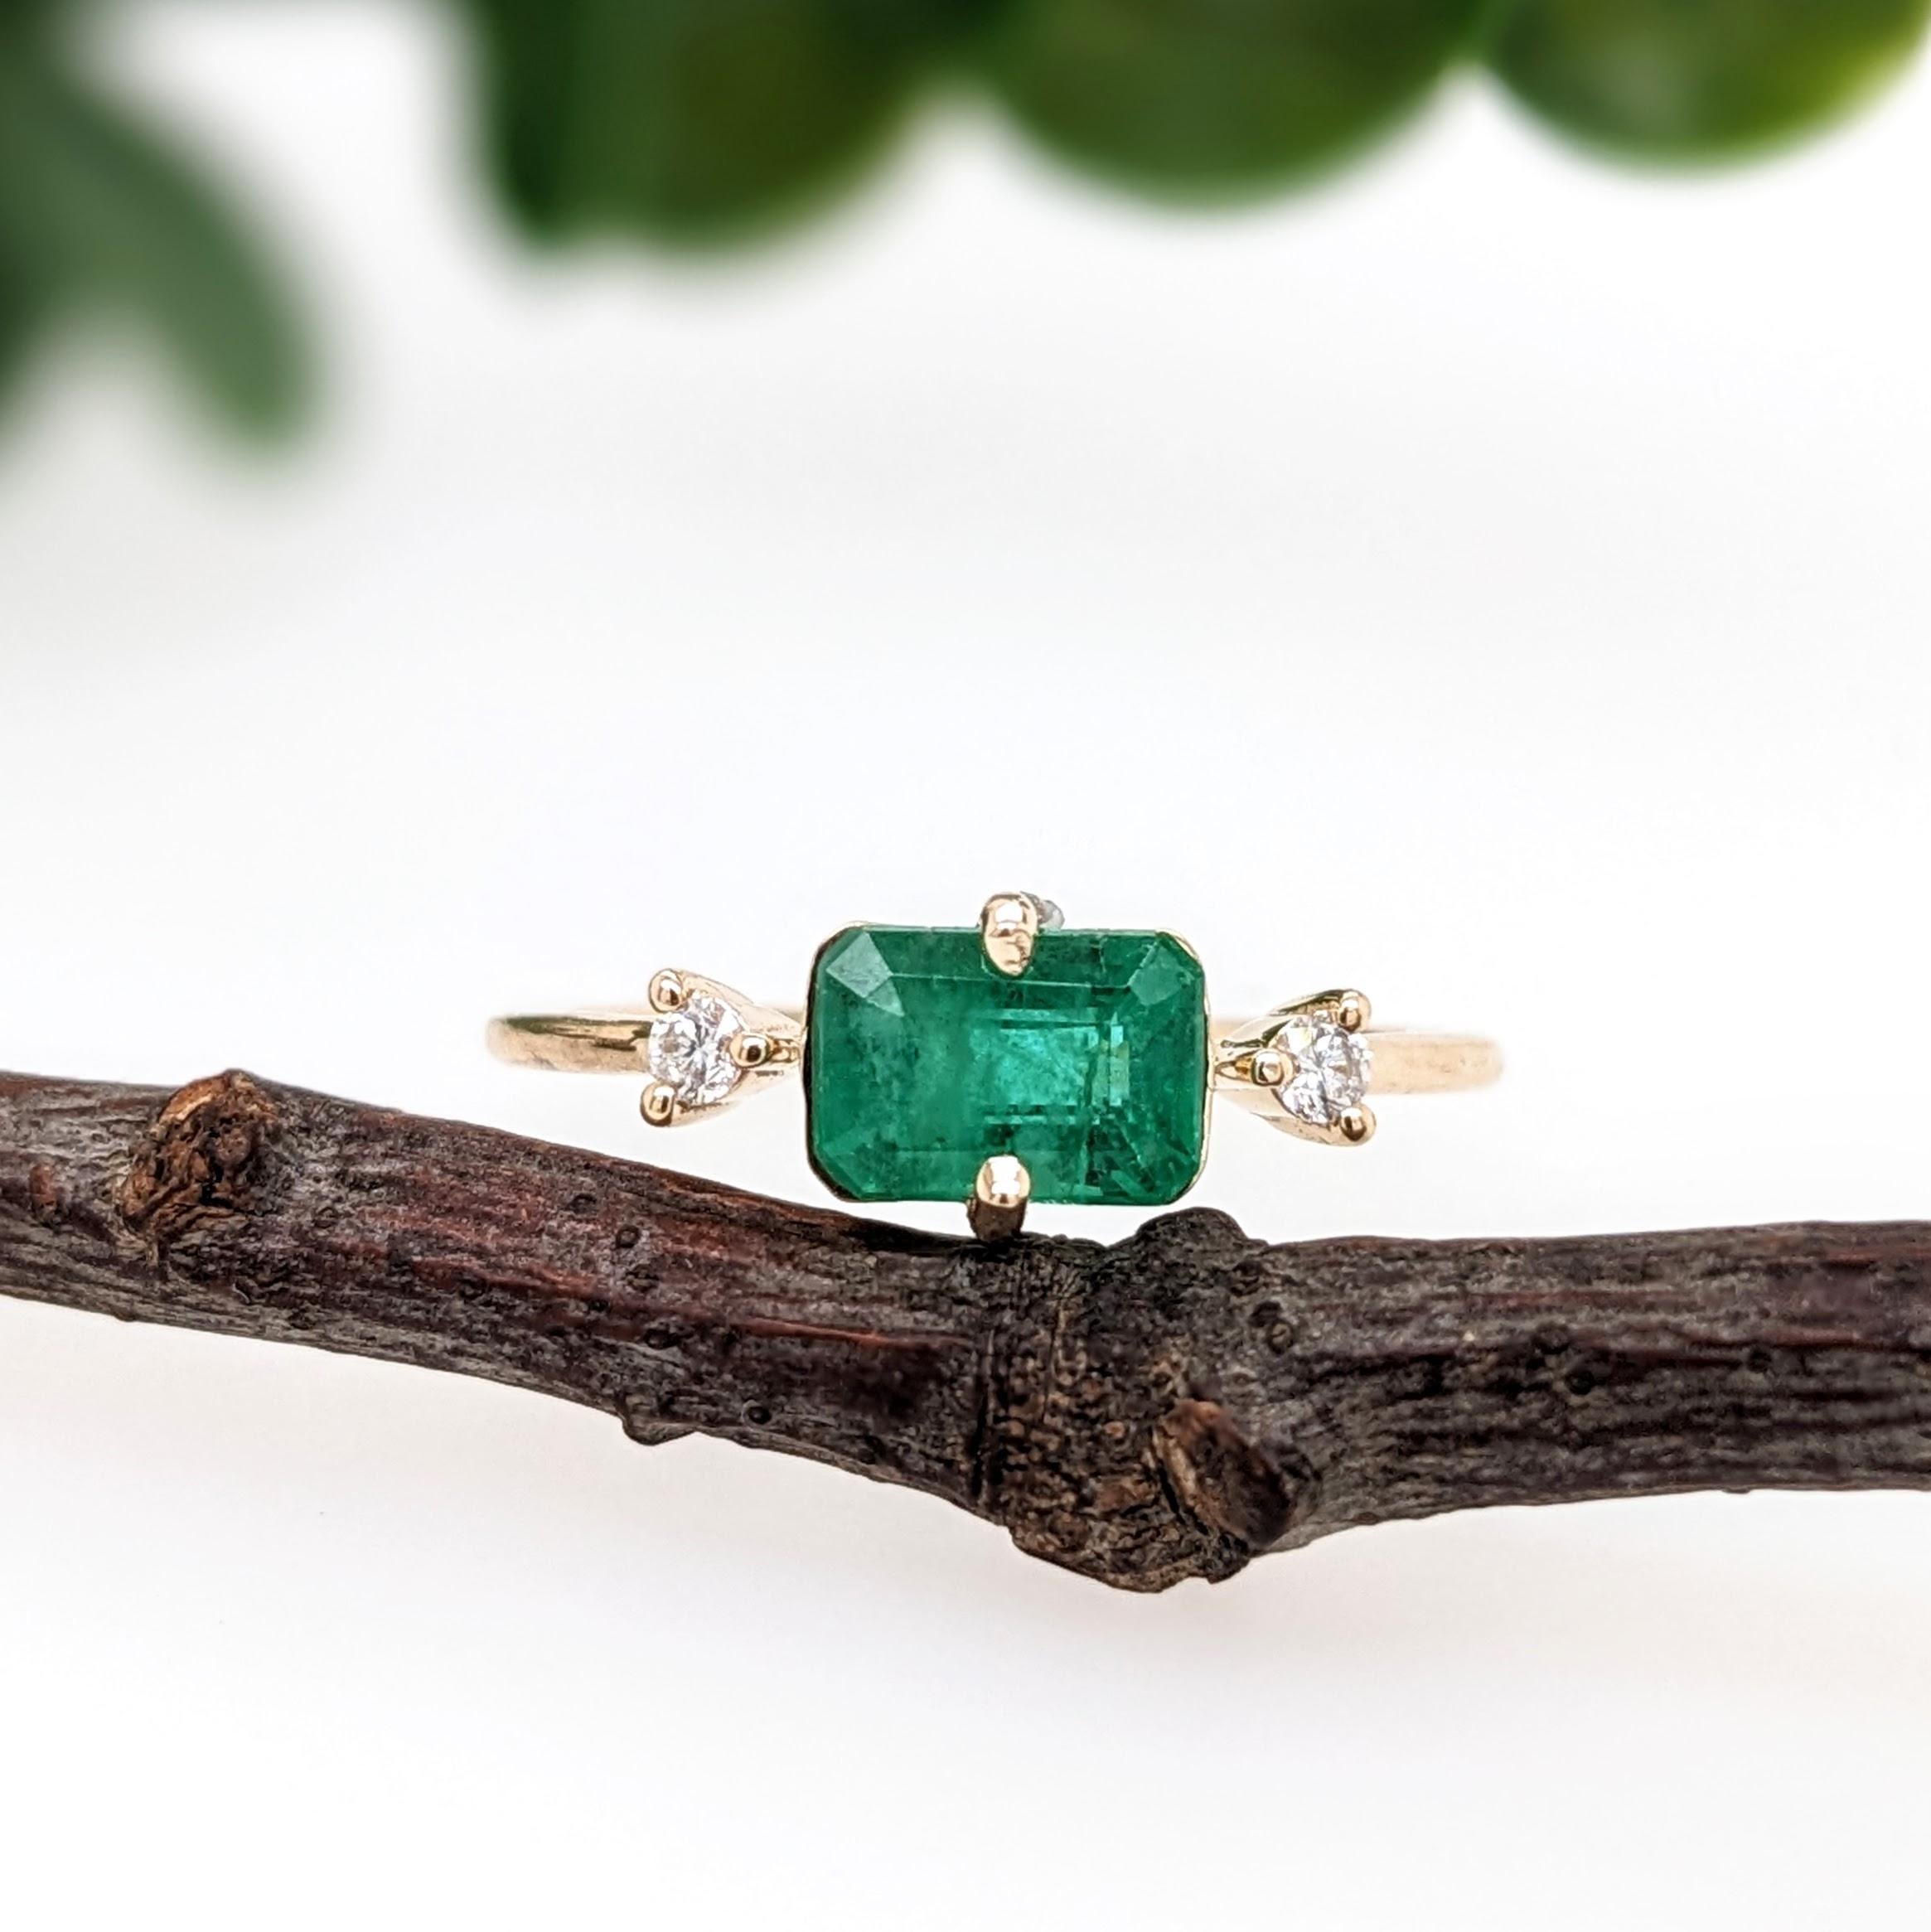 Dieser Ring zeigt einen wunderschönen Smaragd in einer hübschen NNJ Designs Ringfassung mit funkelnden natürlichen Diamanten, die alle in 14k Gelbgold gefasst sind. Ein wunderschöner moderner Look, der sowohl geometrisch als auch zierlich